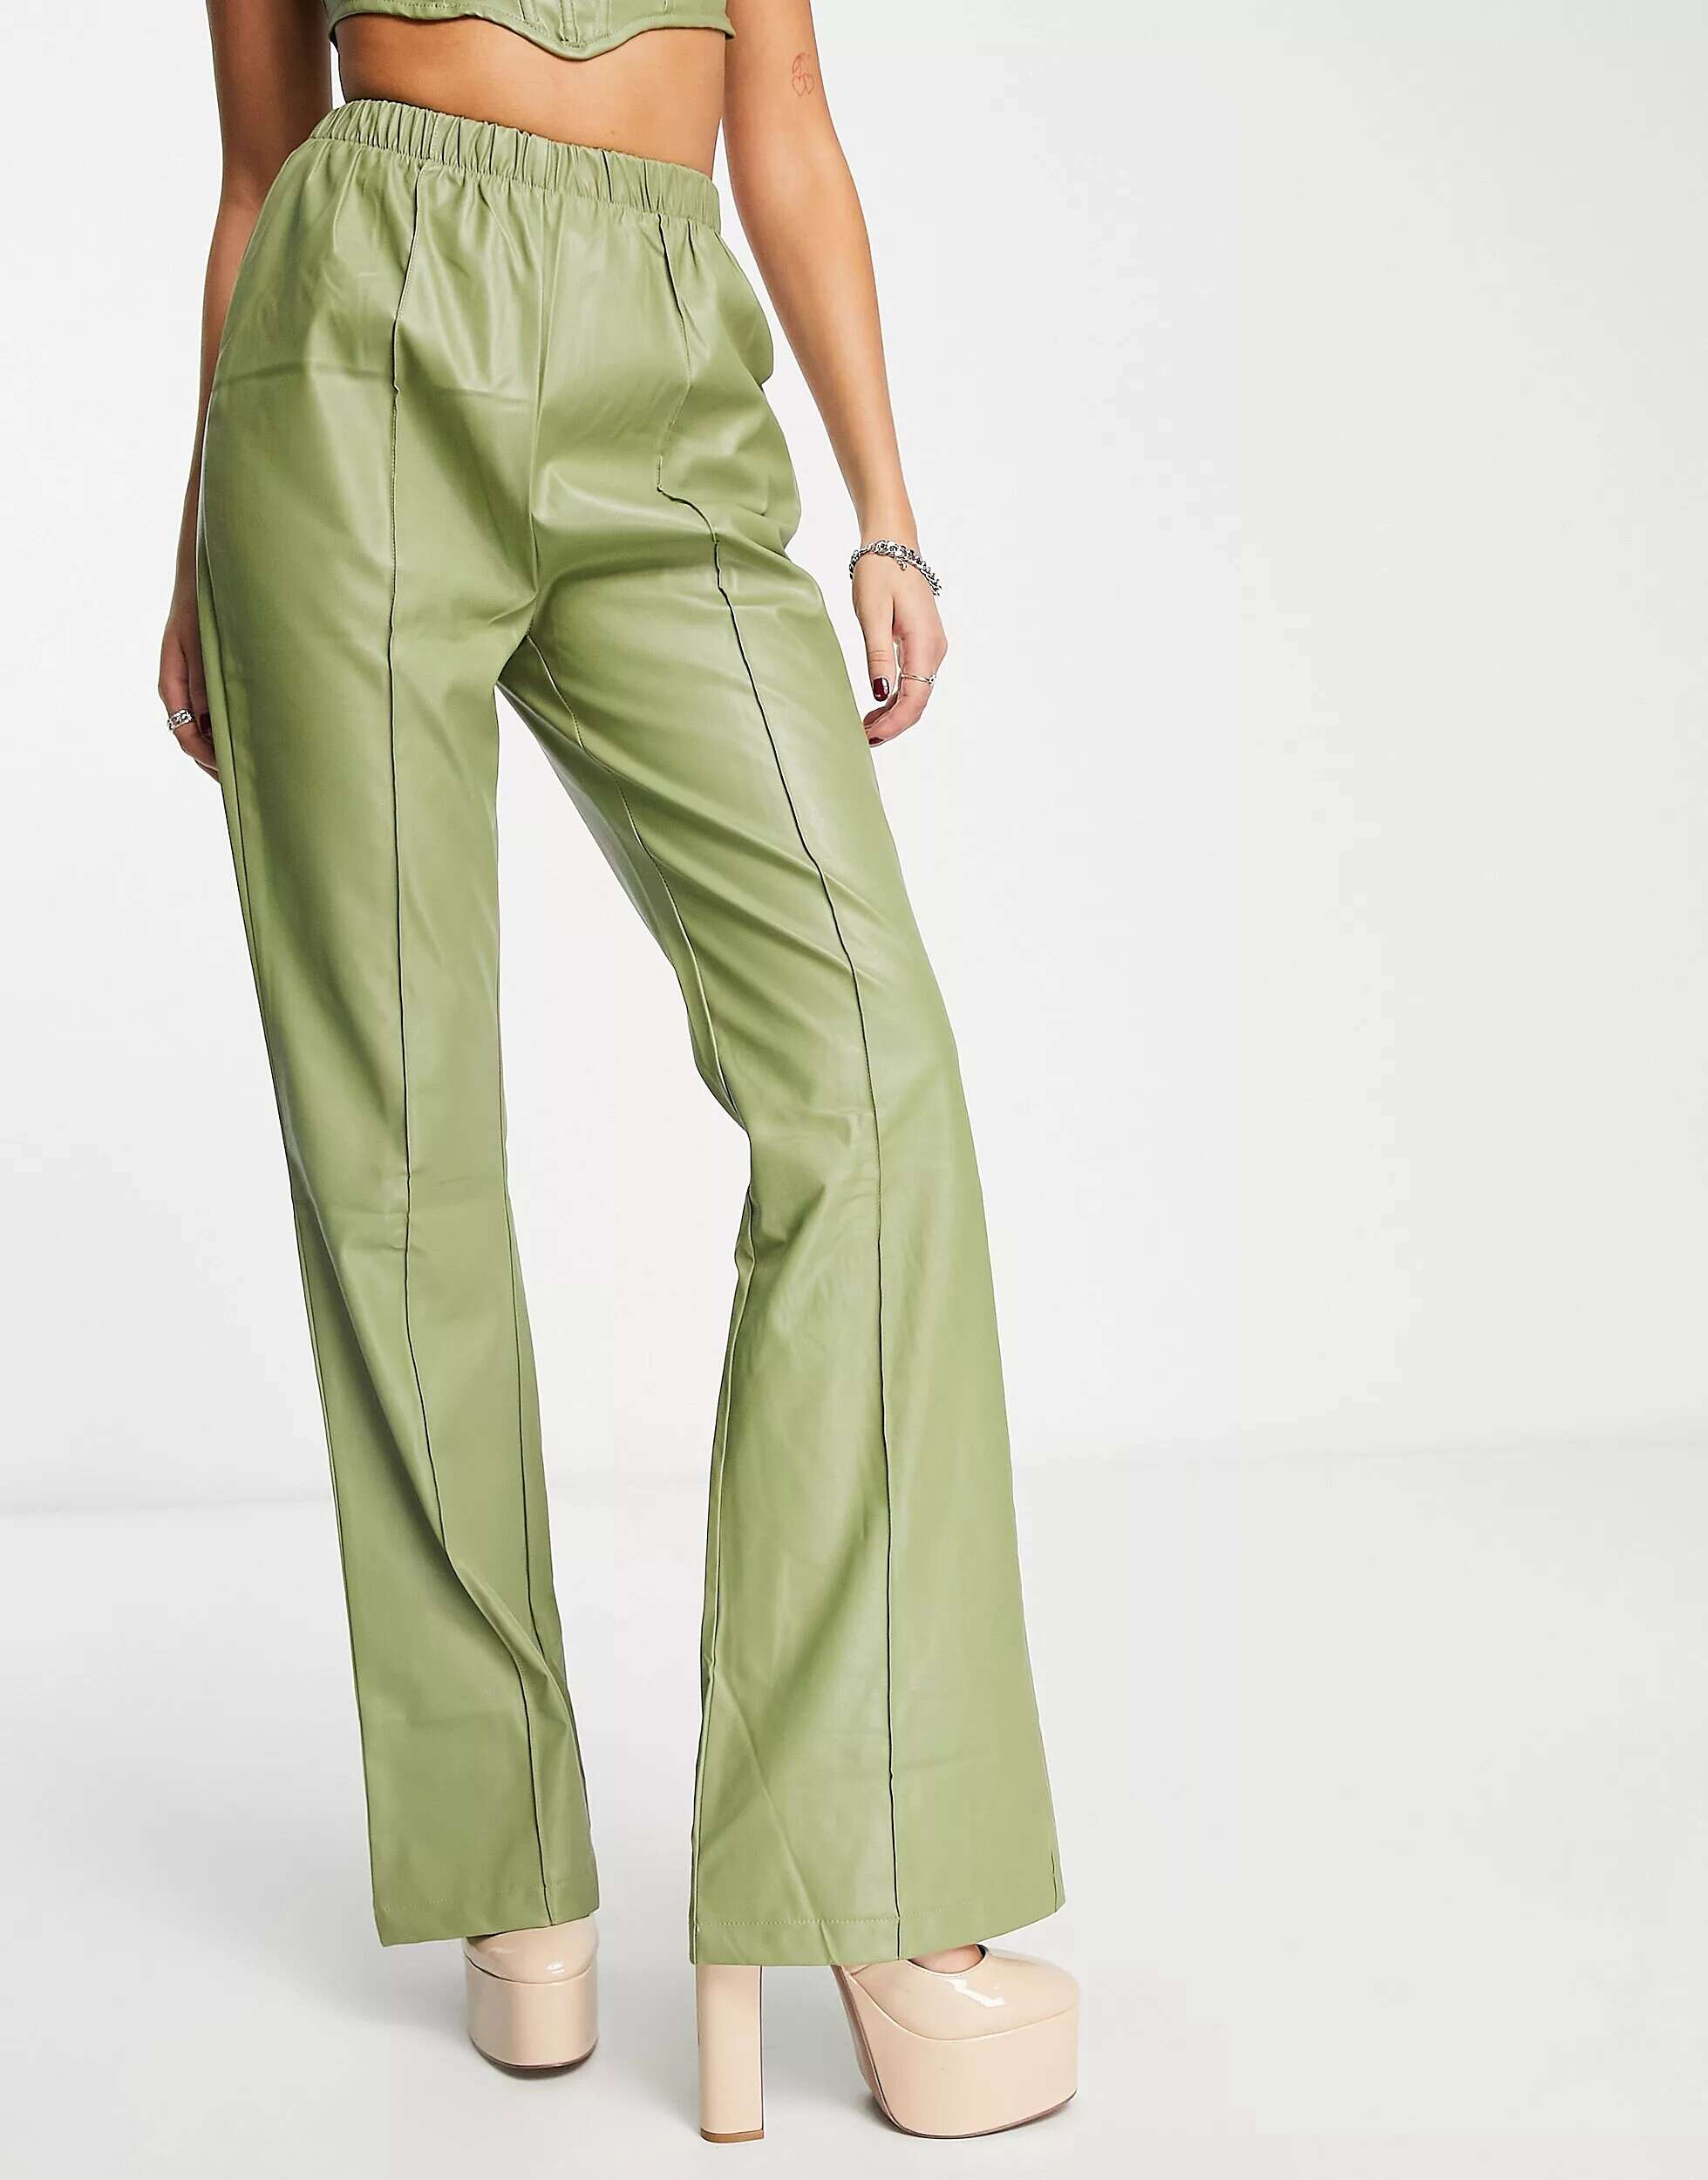 цена Rebellious Fashion кожаные расклешенные брюки цвета хаки